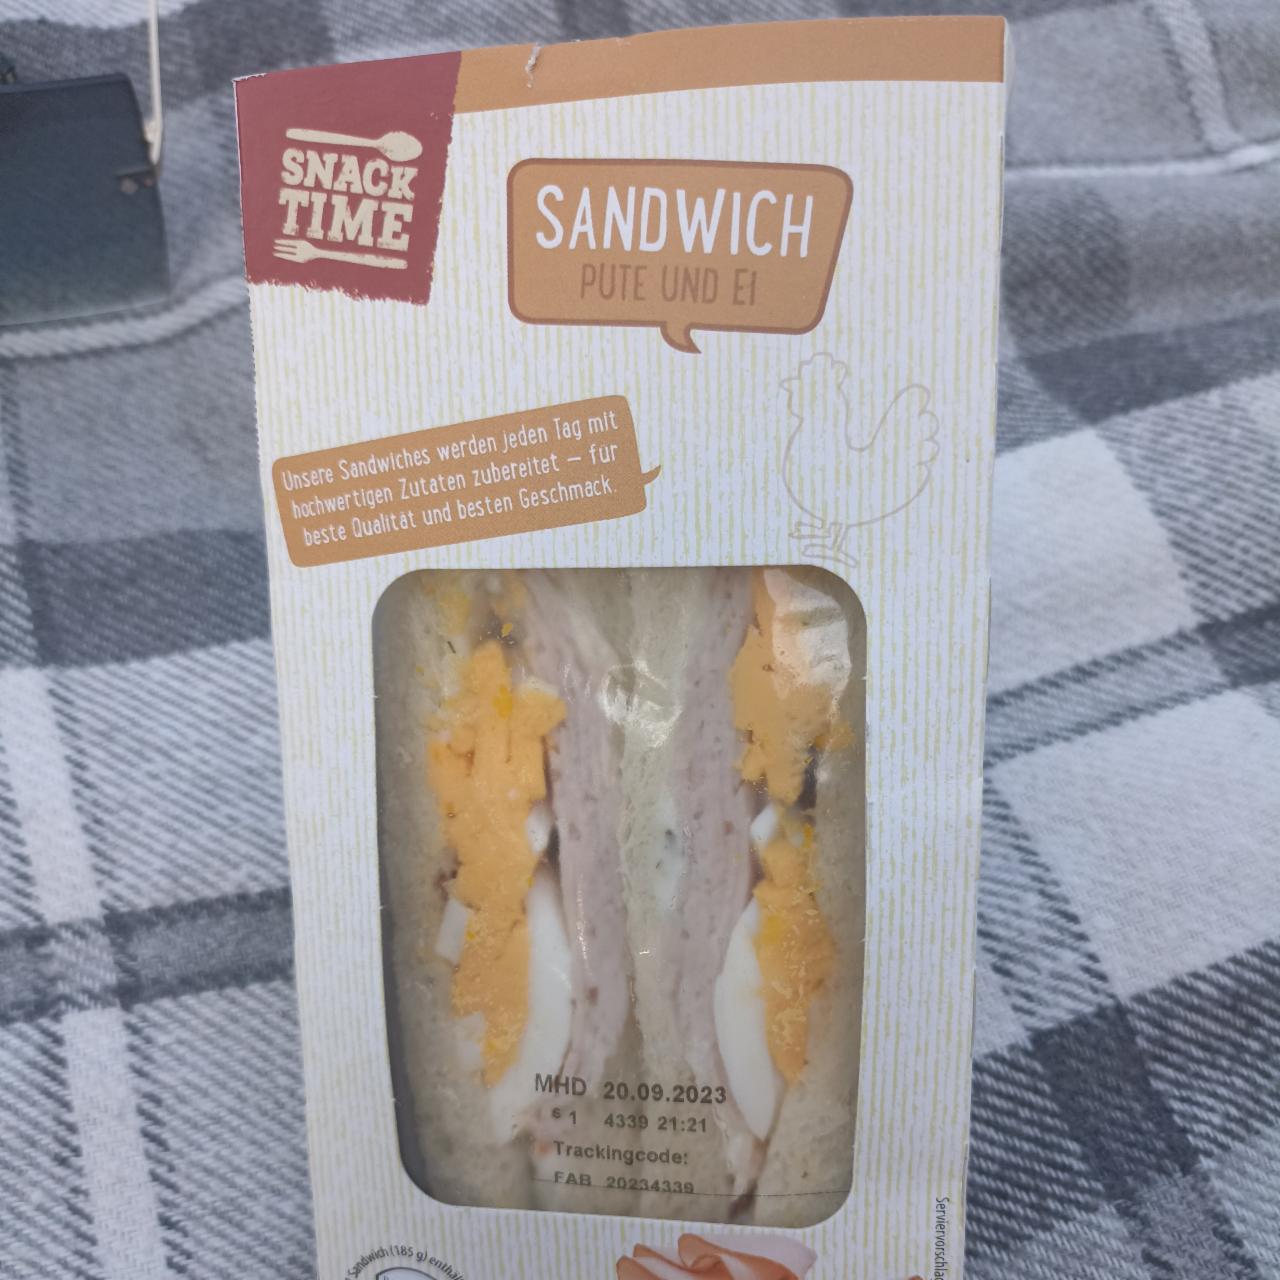 Fotografie - Sandwich Pute und Ei Snack time